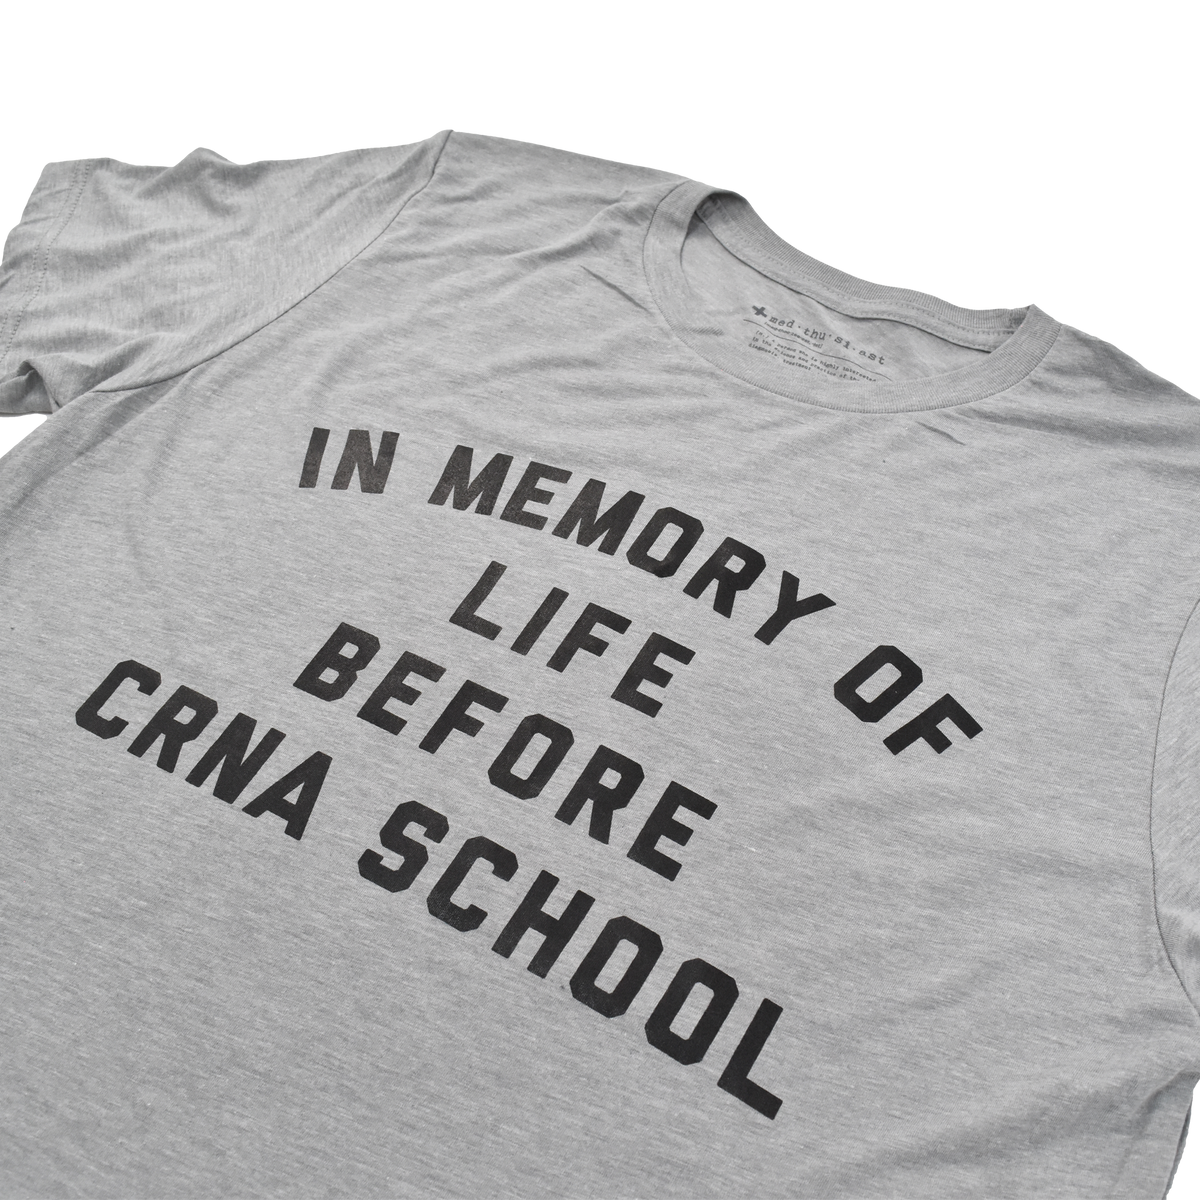 In Memory of Life Before CRNA School Tee - FINAL SALE